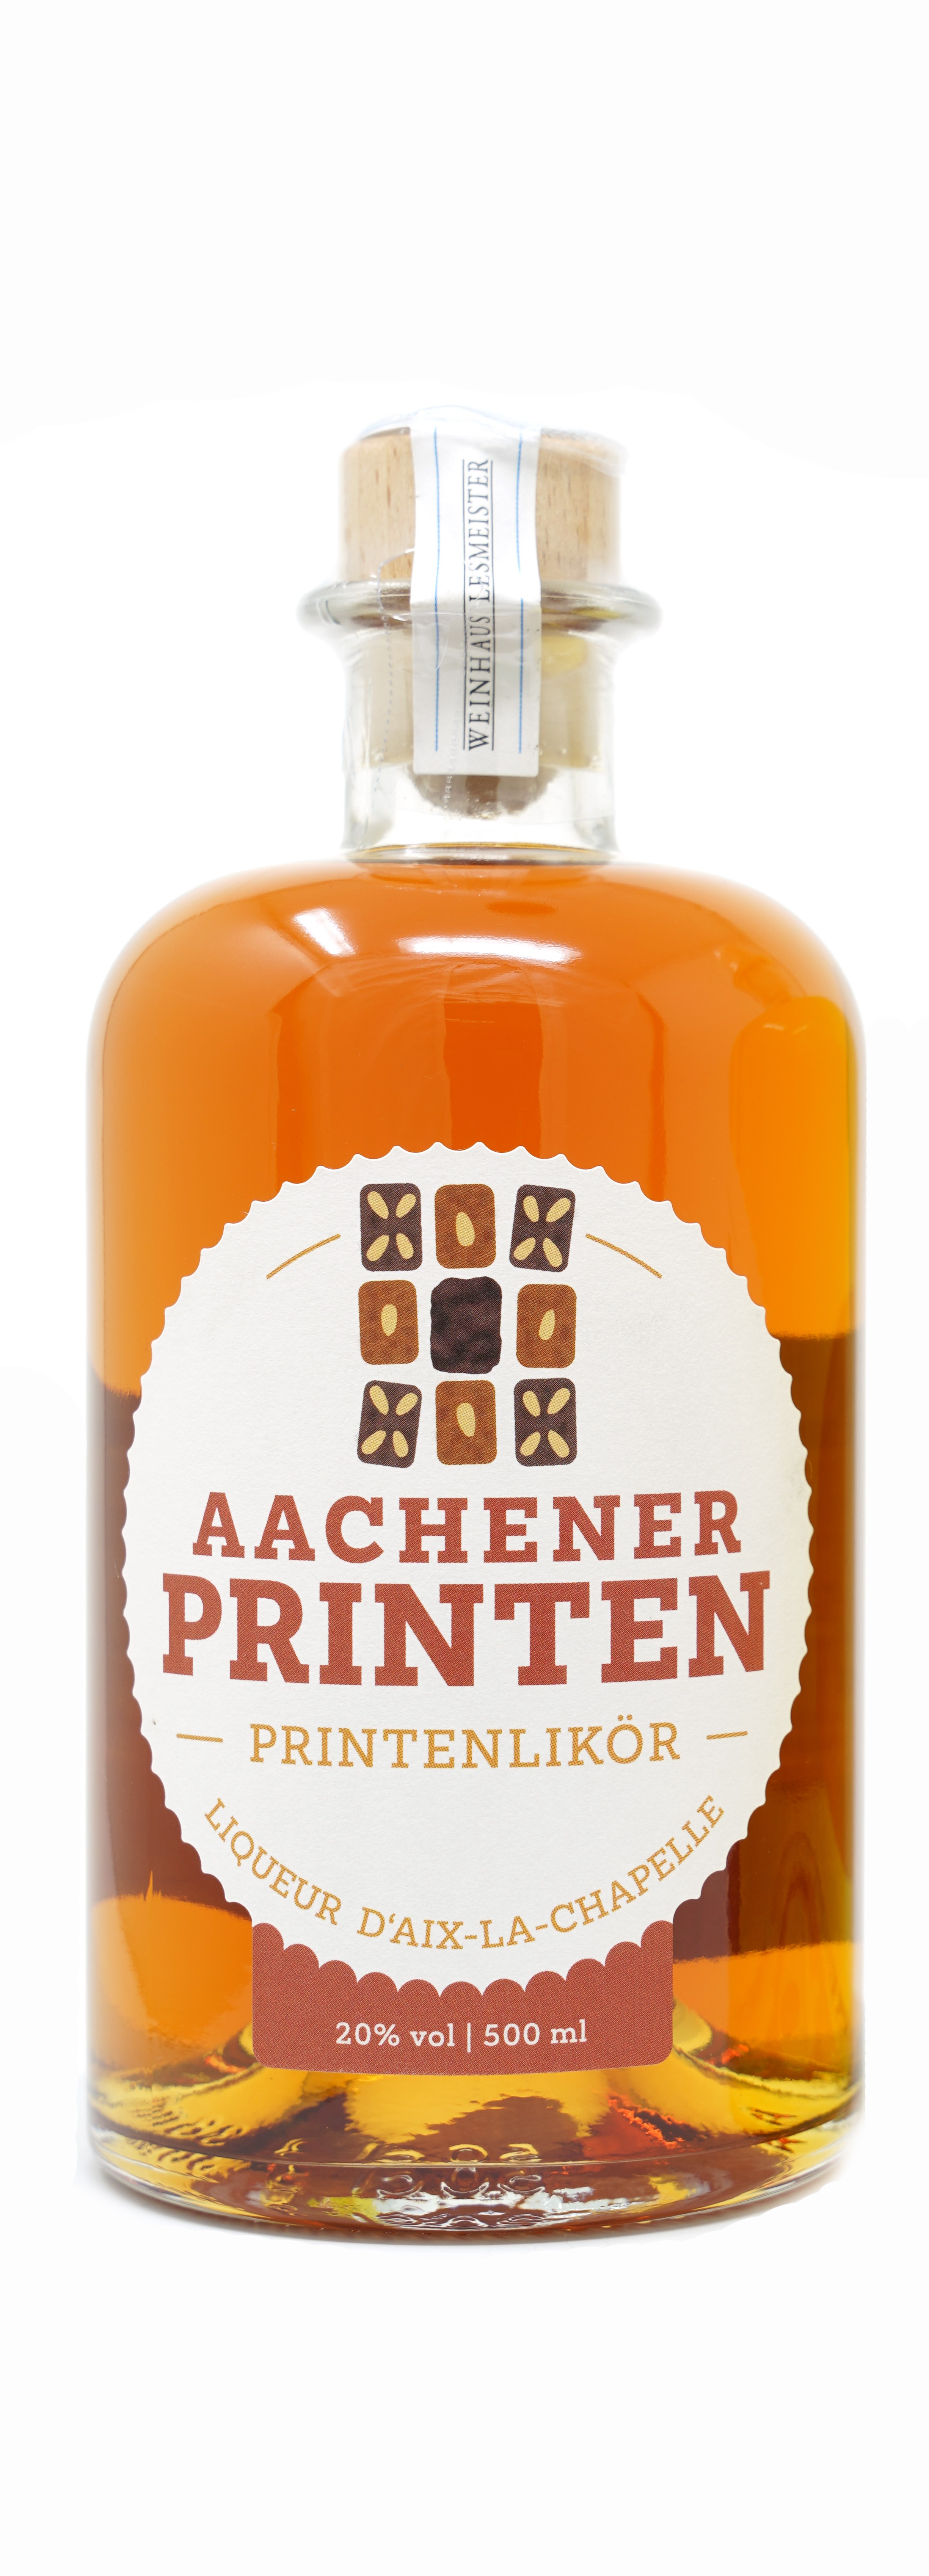 Aachener Printenlikör -Weinhaus Lesmeister- 0,5l - 20% vol